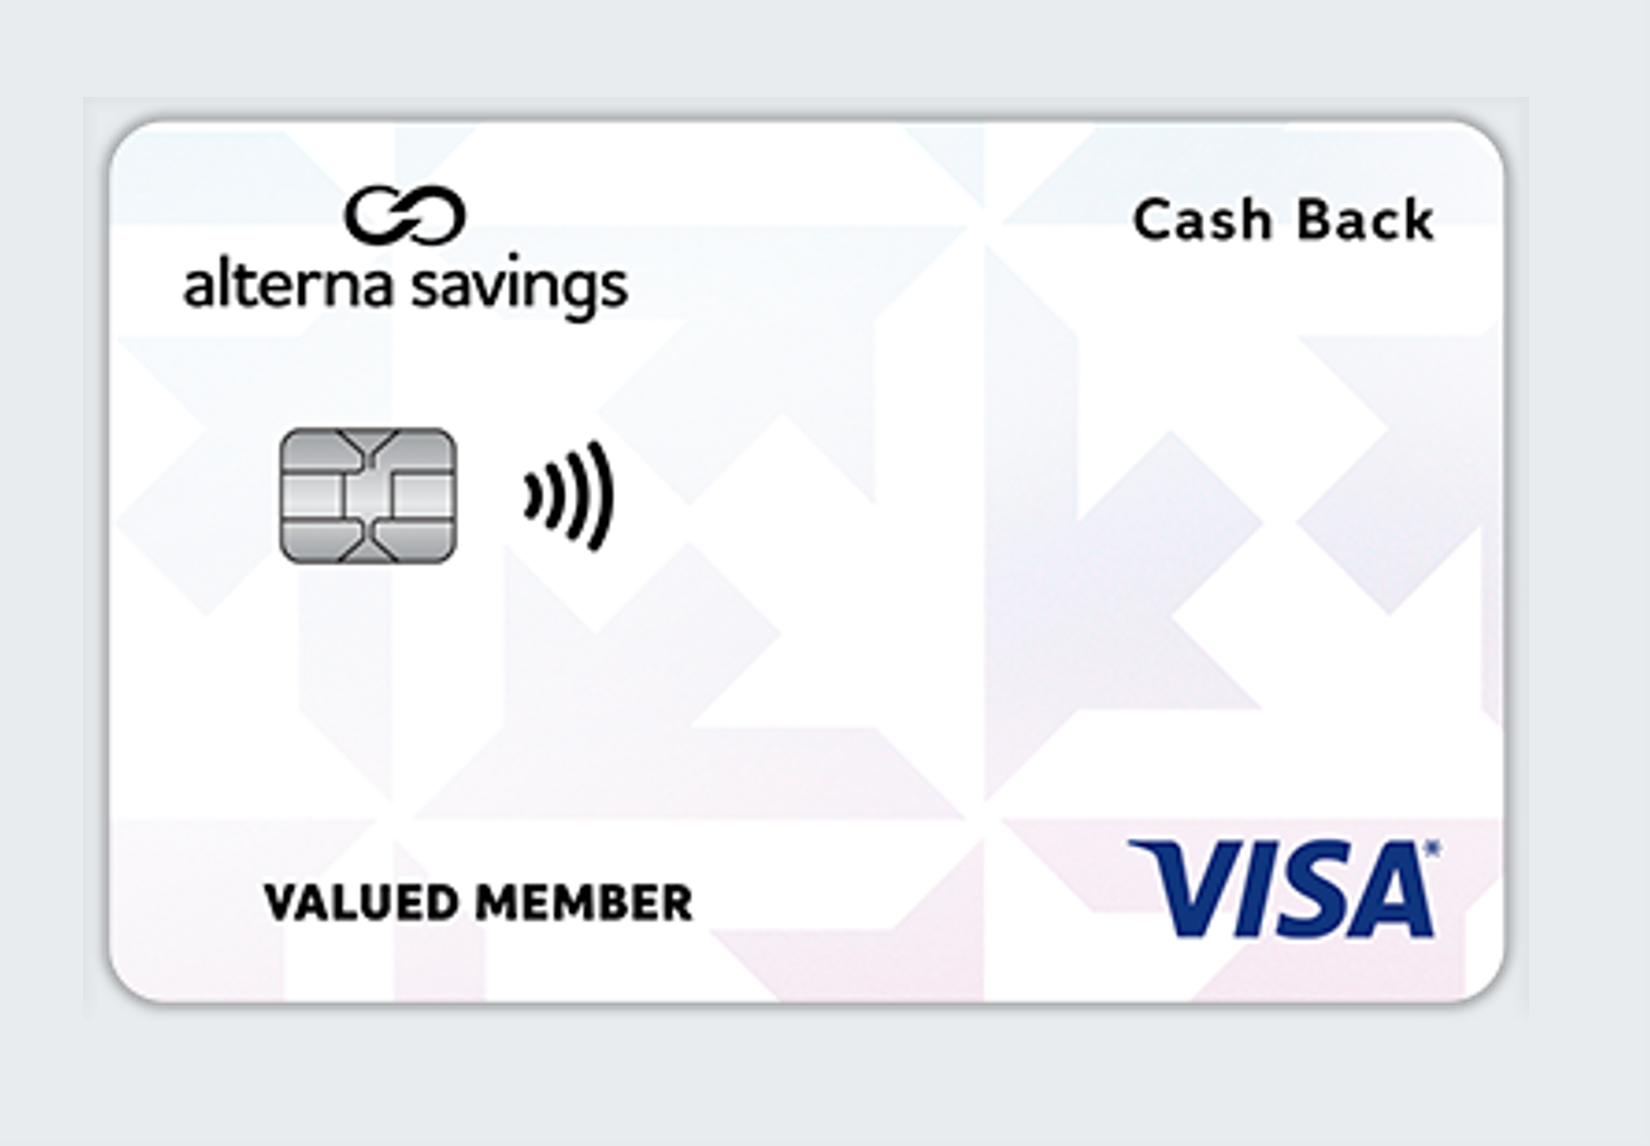 cash back card image